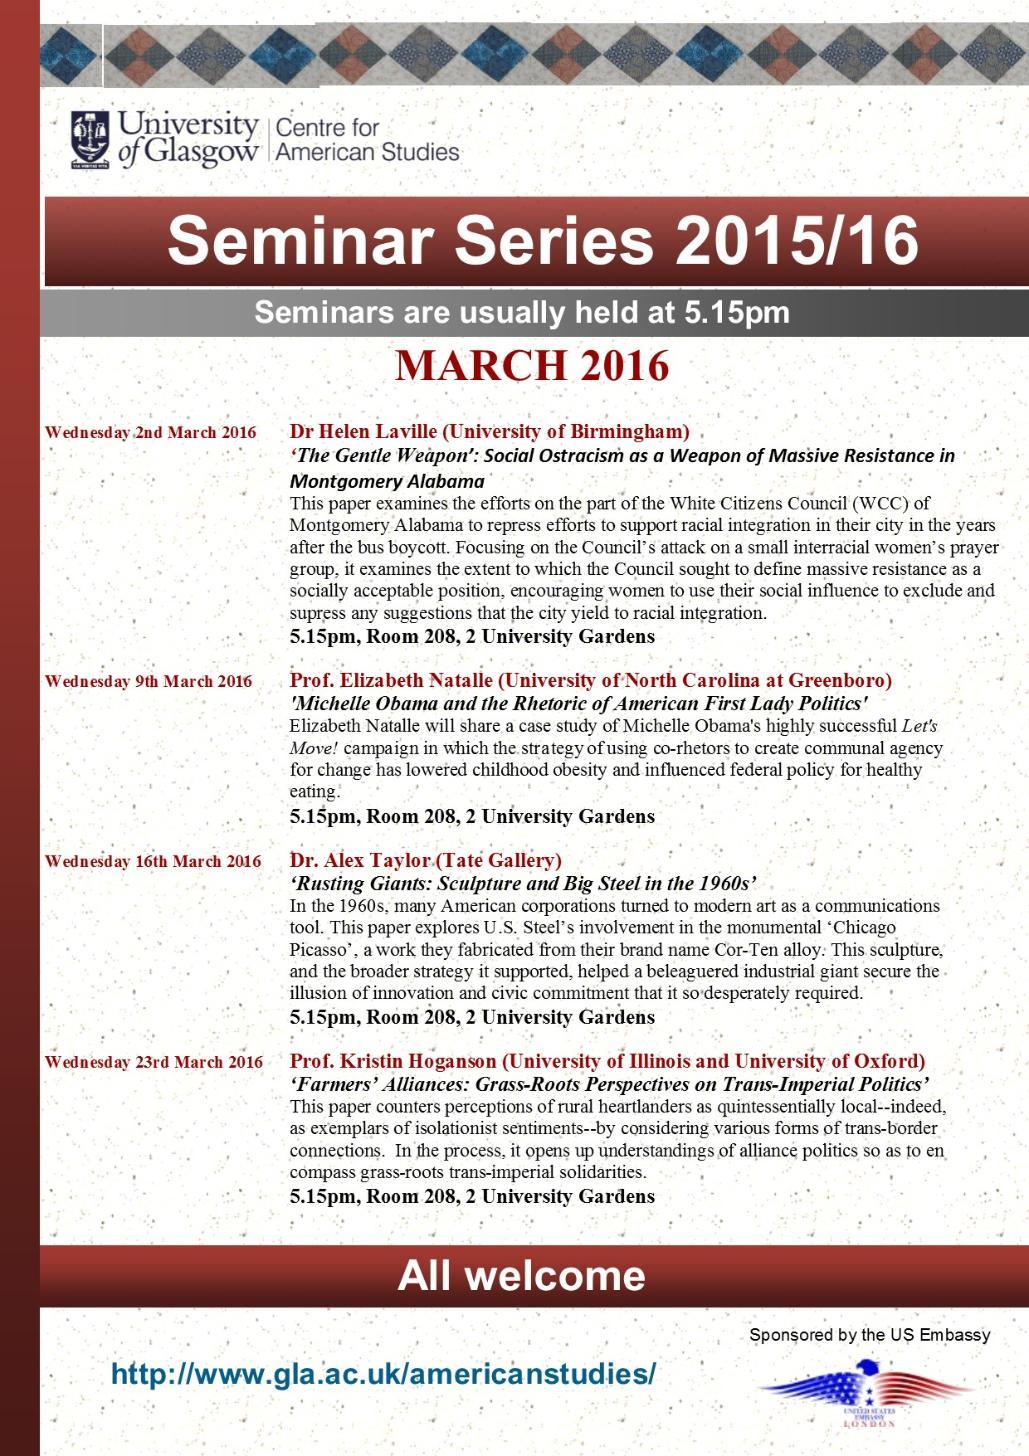 American Studies Seminar Series March